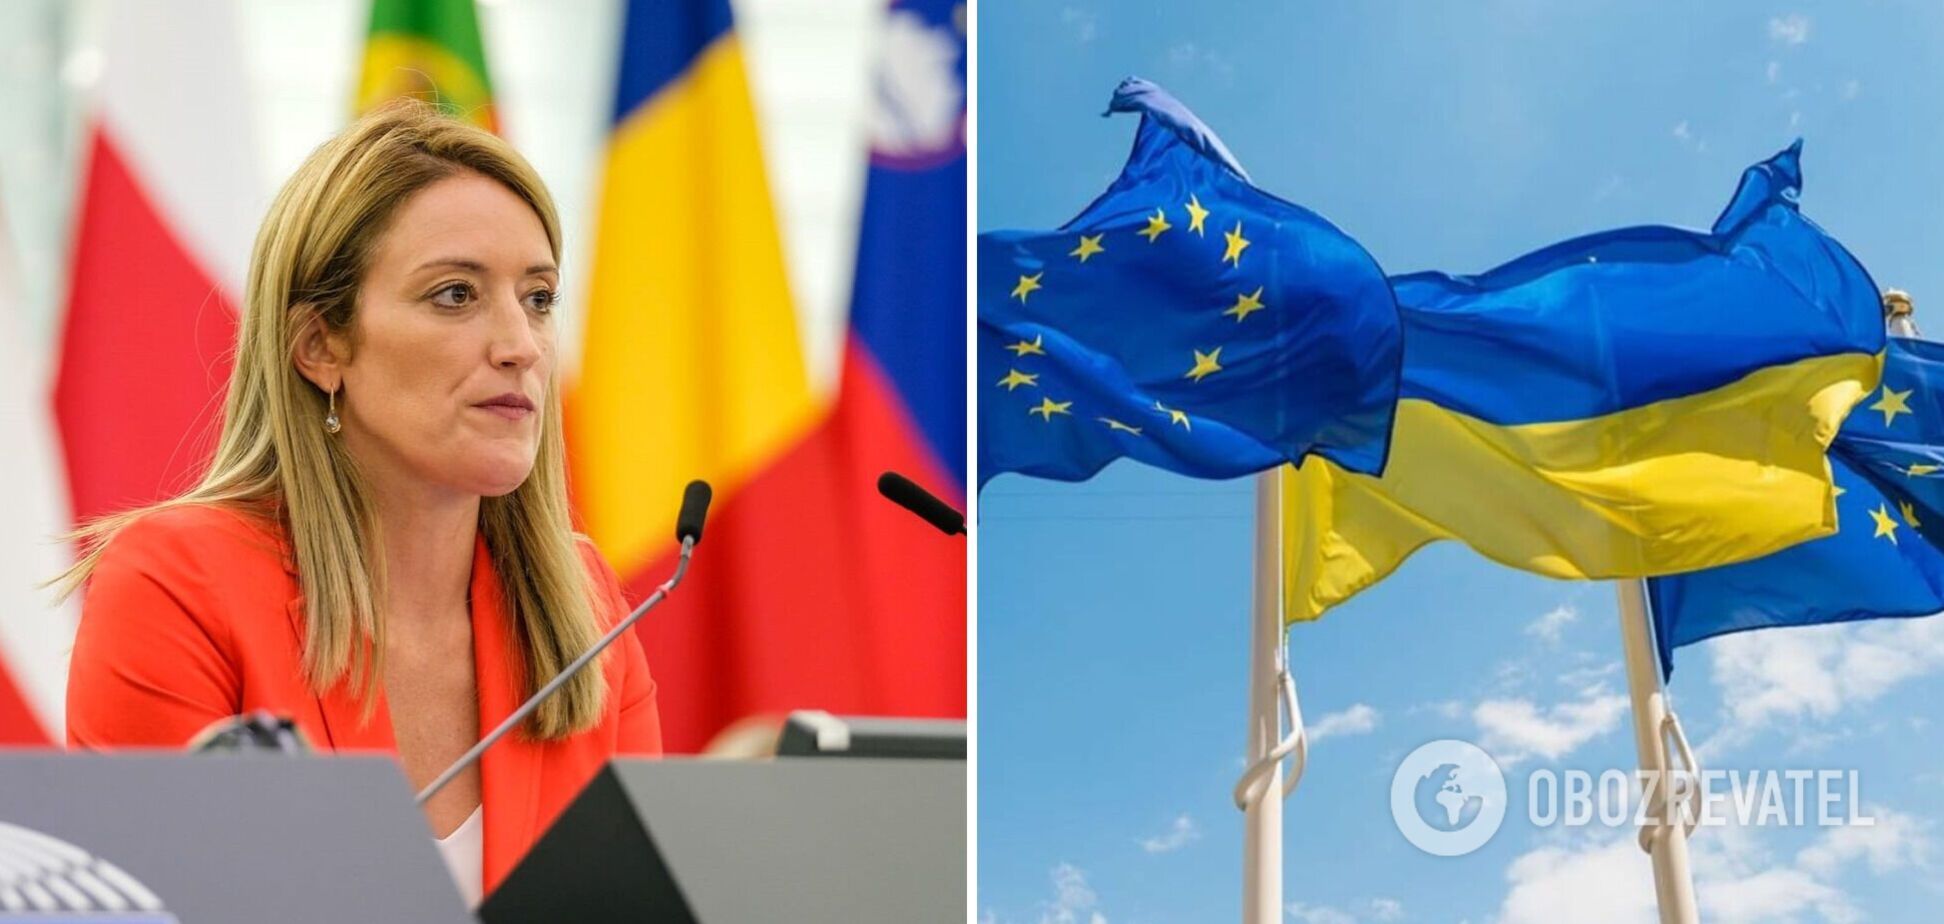 ЕС должен начать формальные переговоры с Украиной по членству уже в декабре, – президент Европарламента